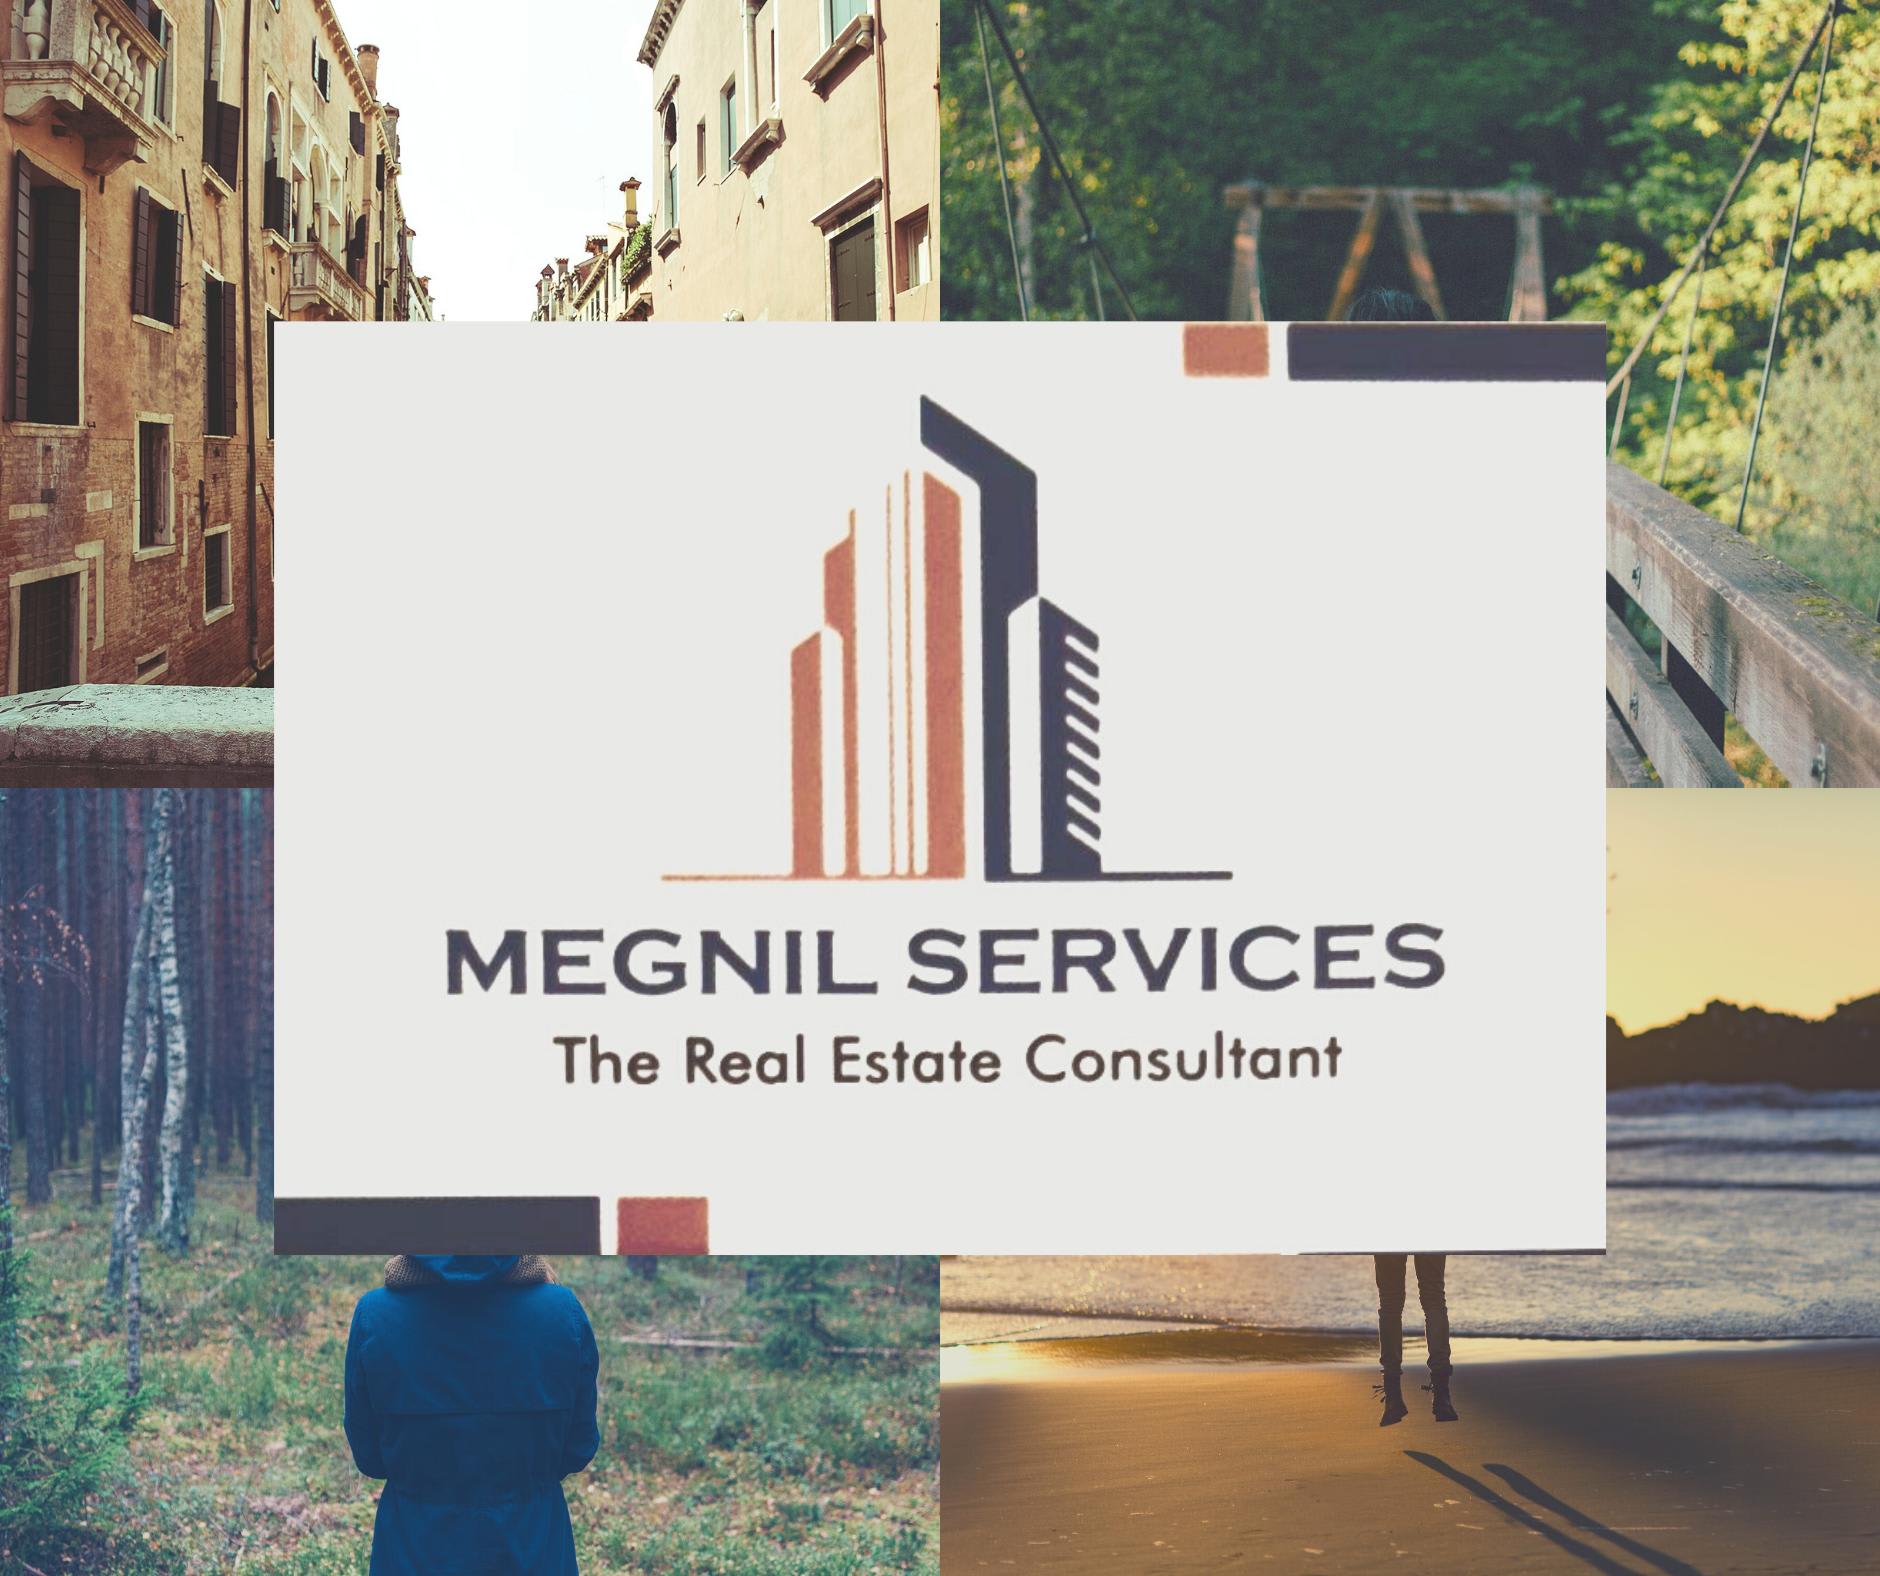 MEGNIL Services